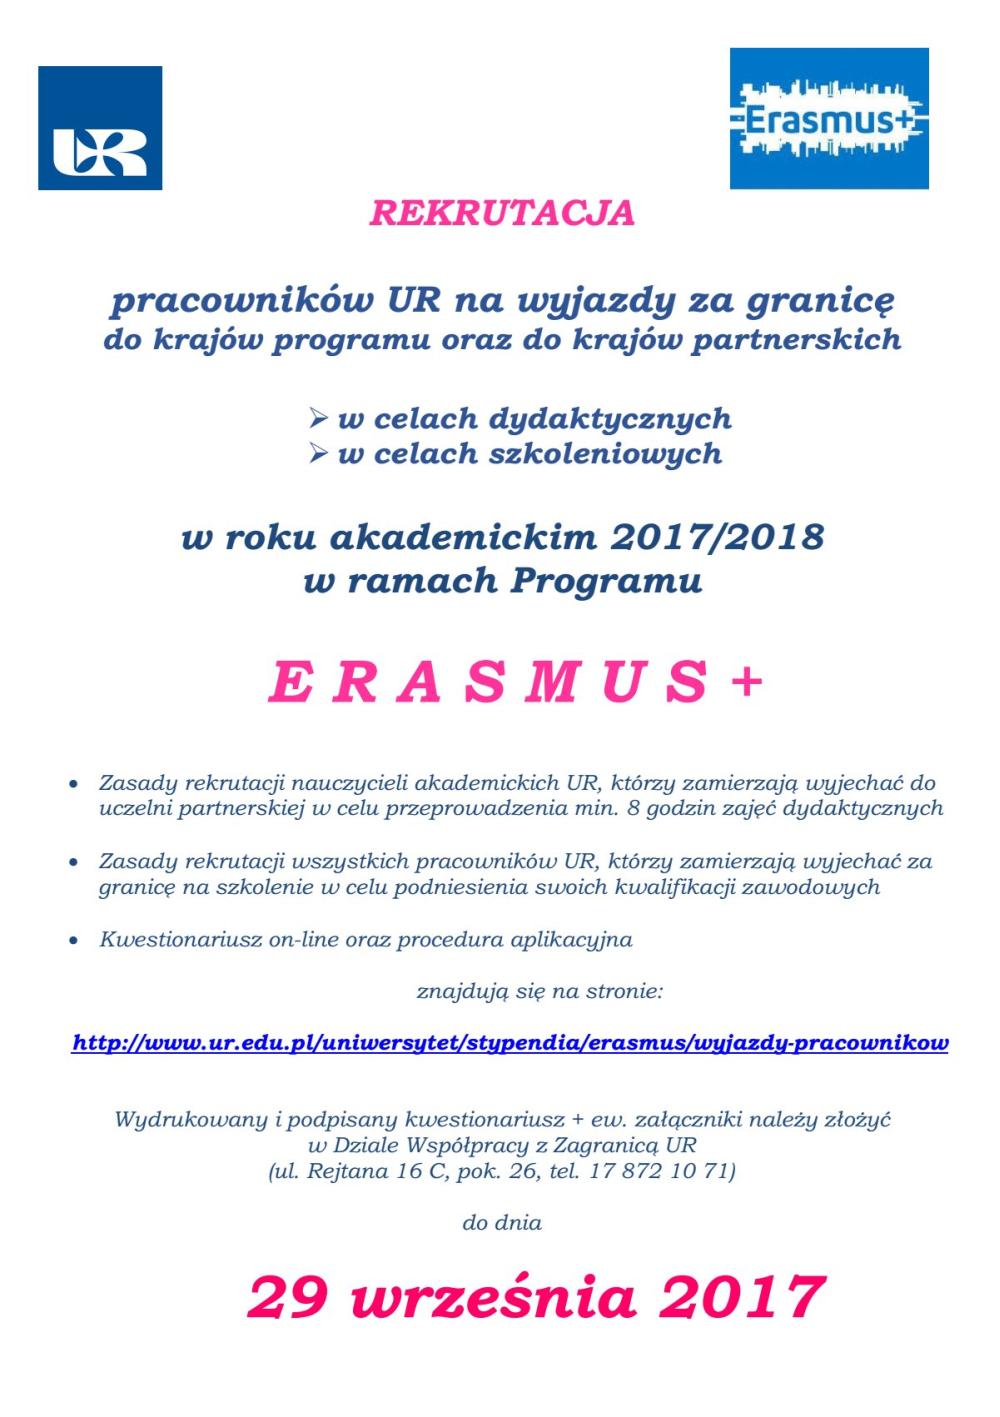 REKRUTACJA pracowników UR na wyjazdy za granicę (program ERASMUS+)